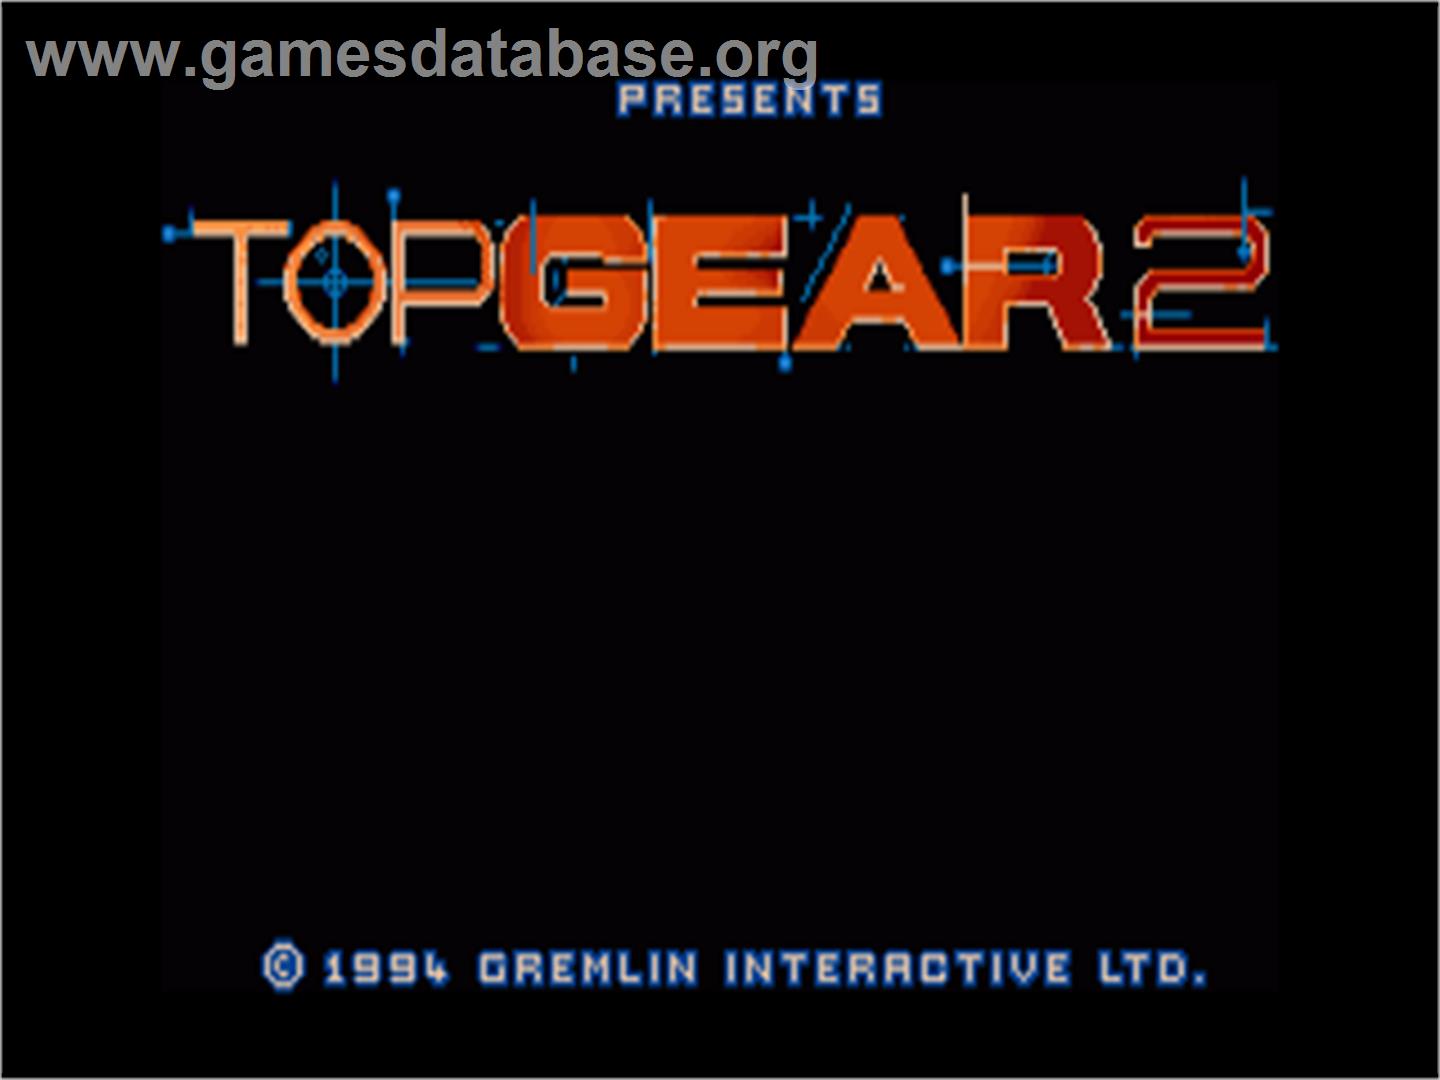 Top Gear 2 - Commodore Amiga - Artwork - Title Screen